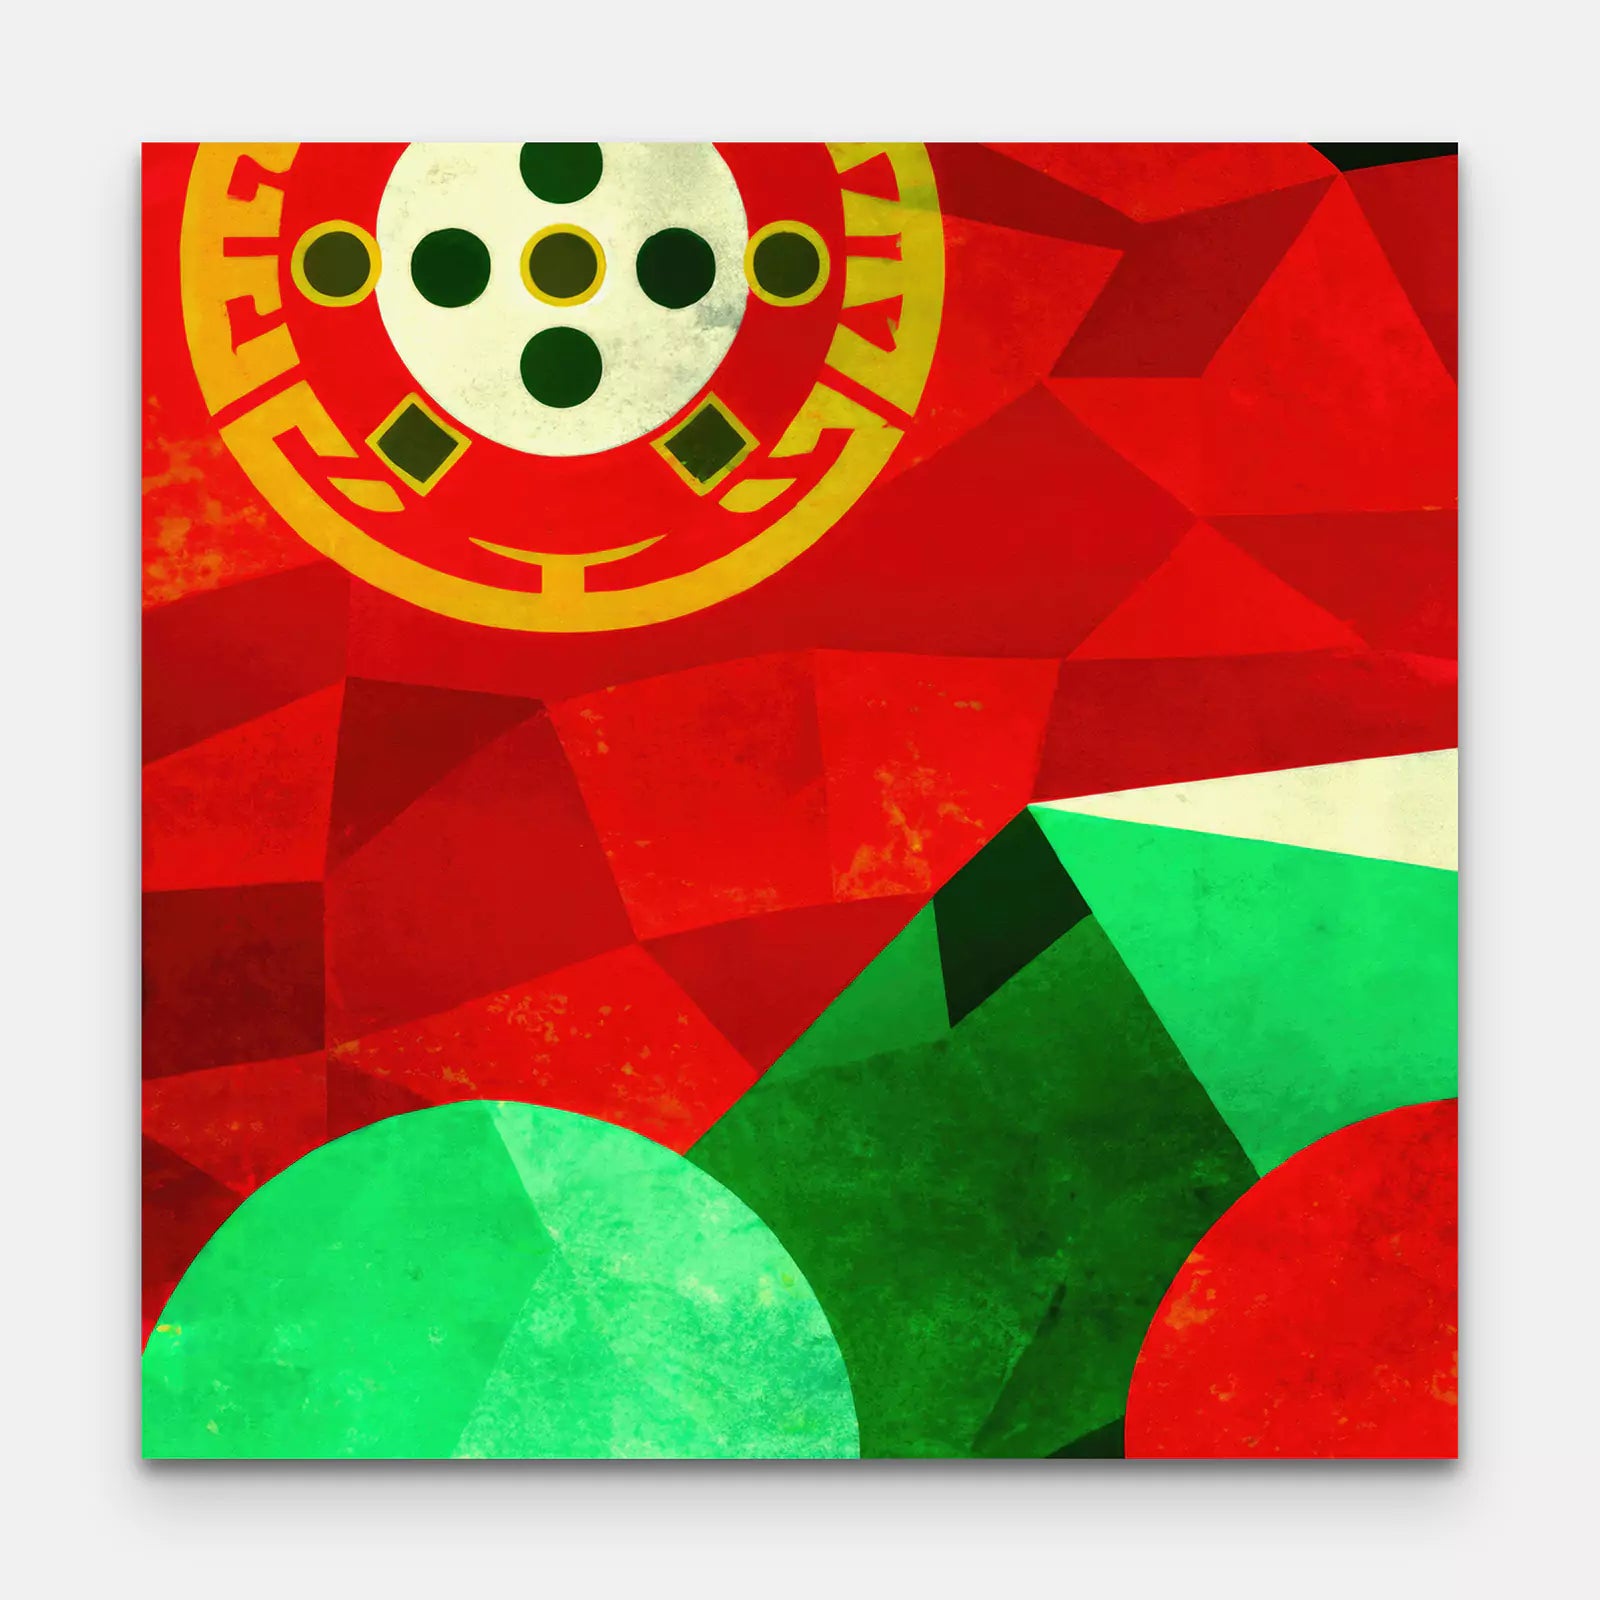 Portugal - Flag Inspired Art